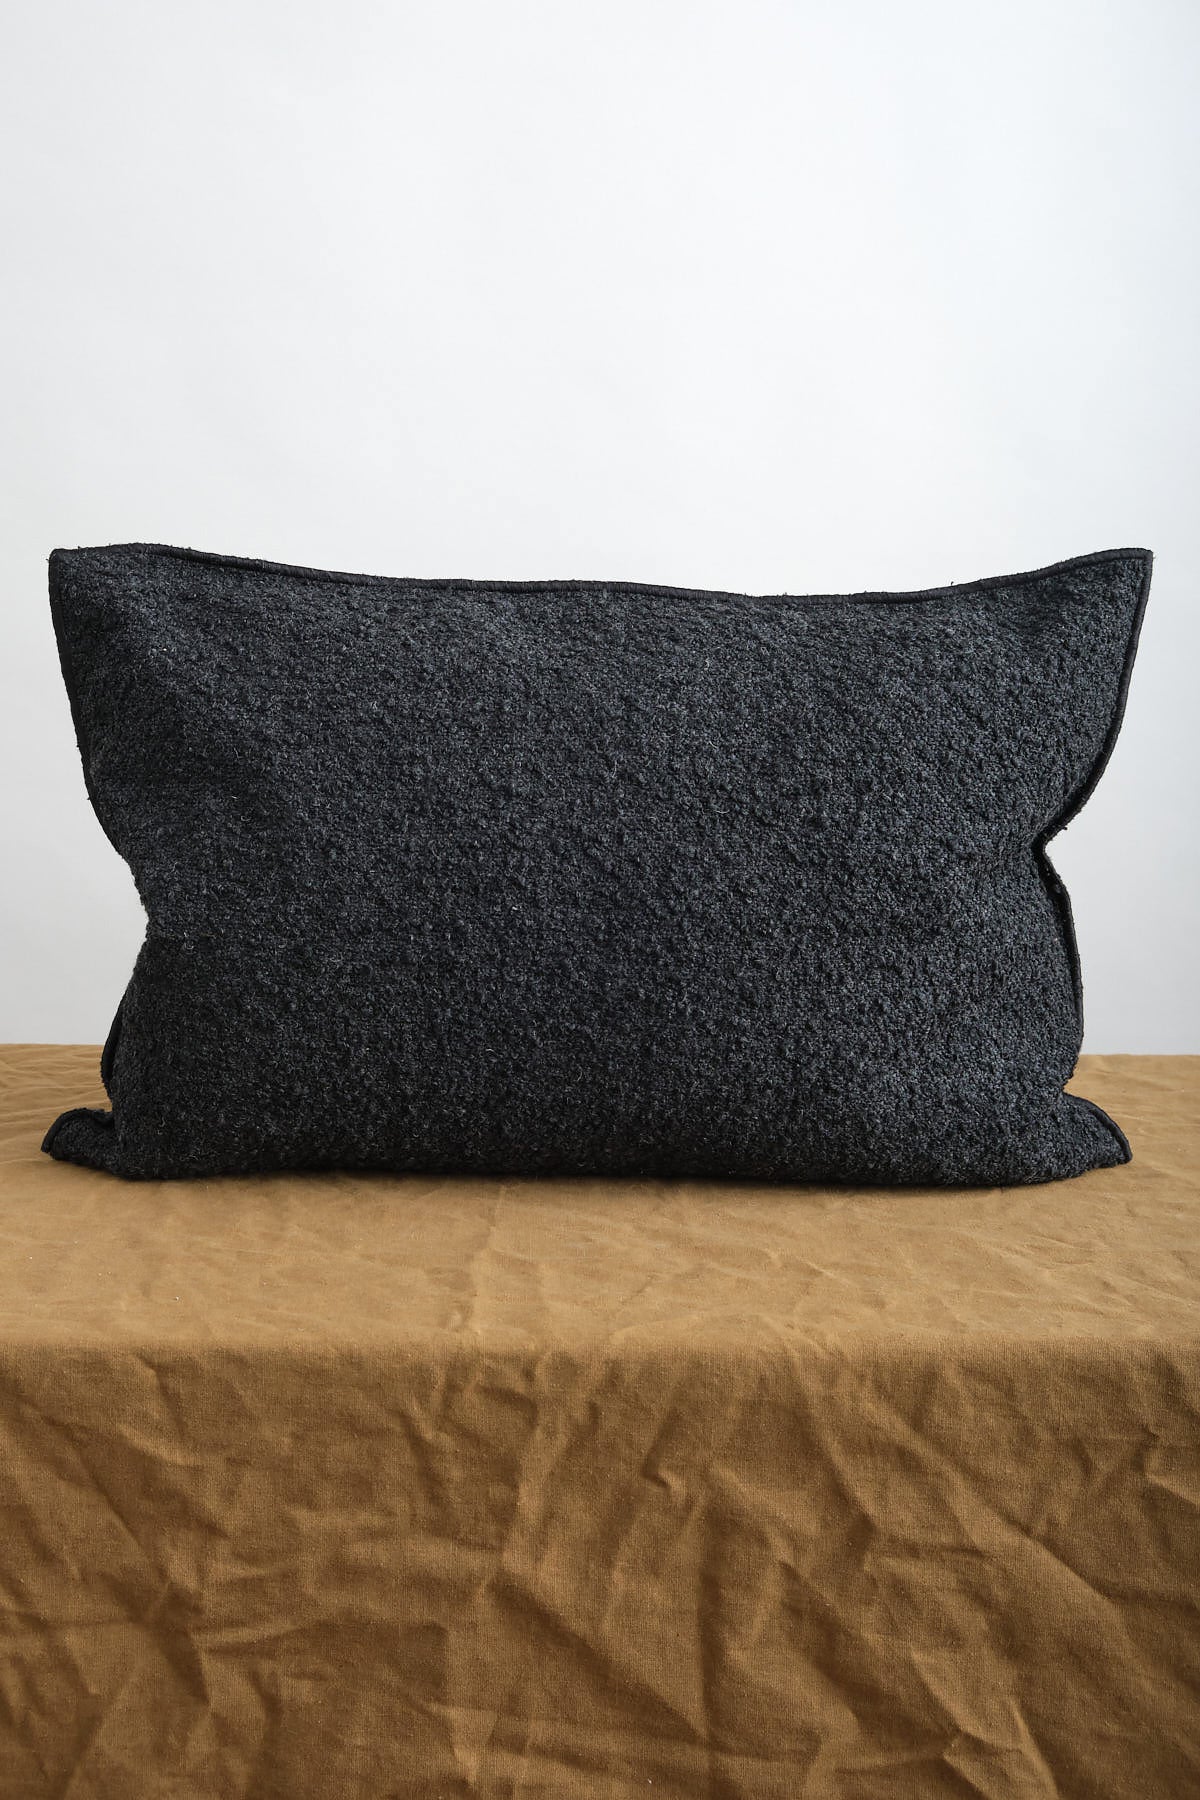 Maison De Vacances 16 x 24 inch Canvas Wooly Pillow in Charbon Black